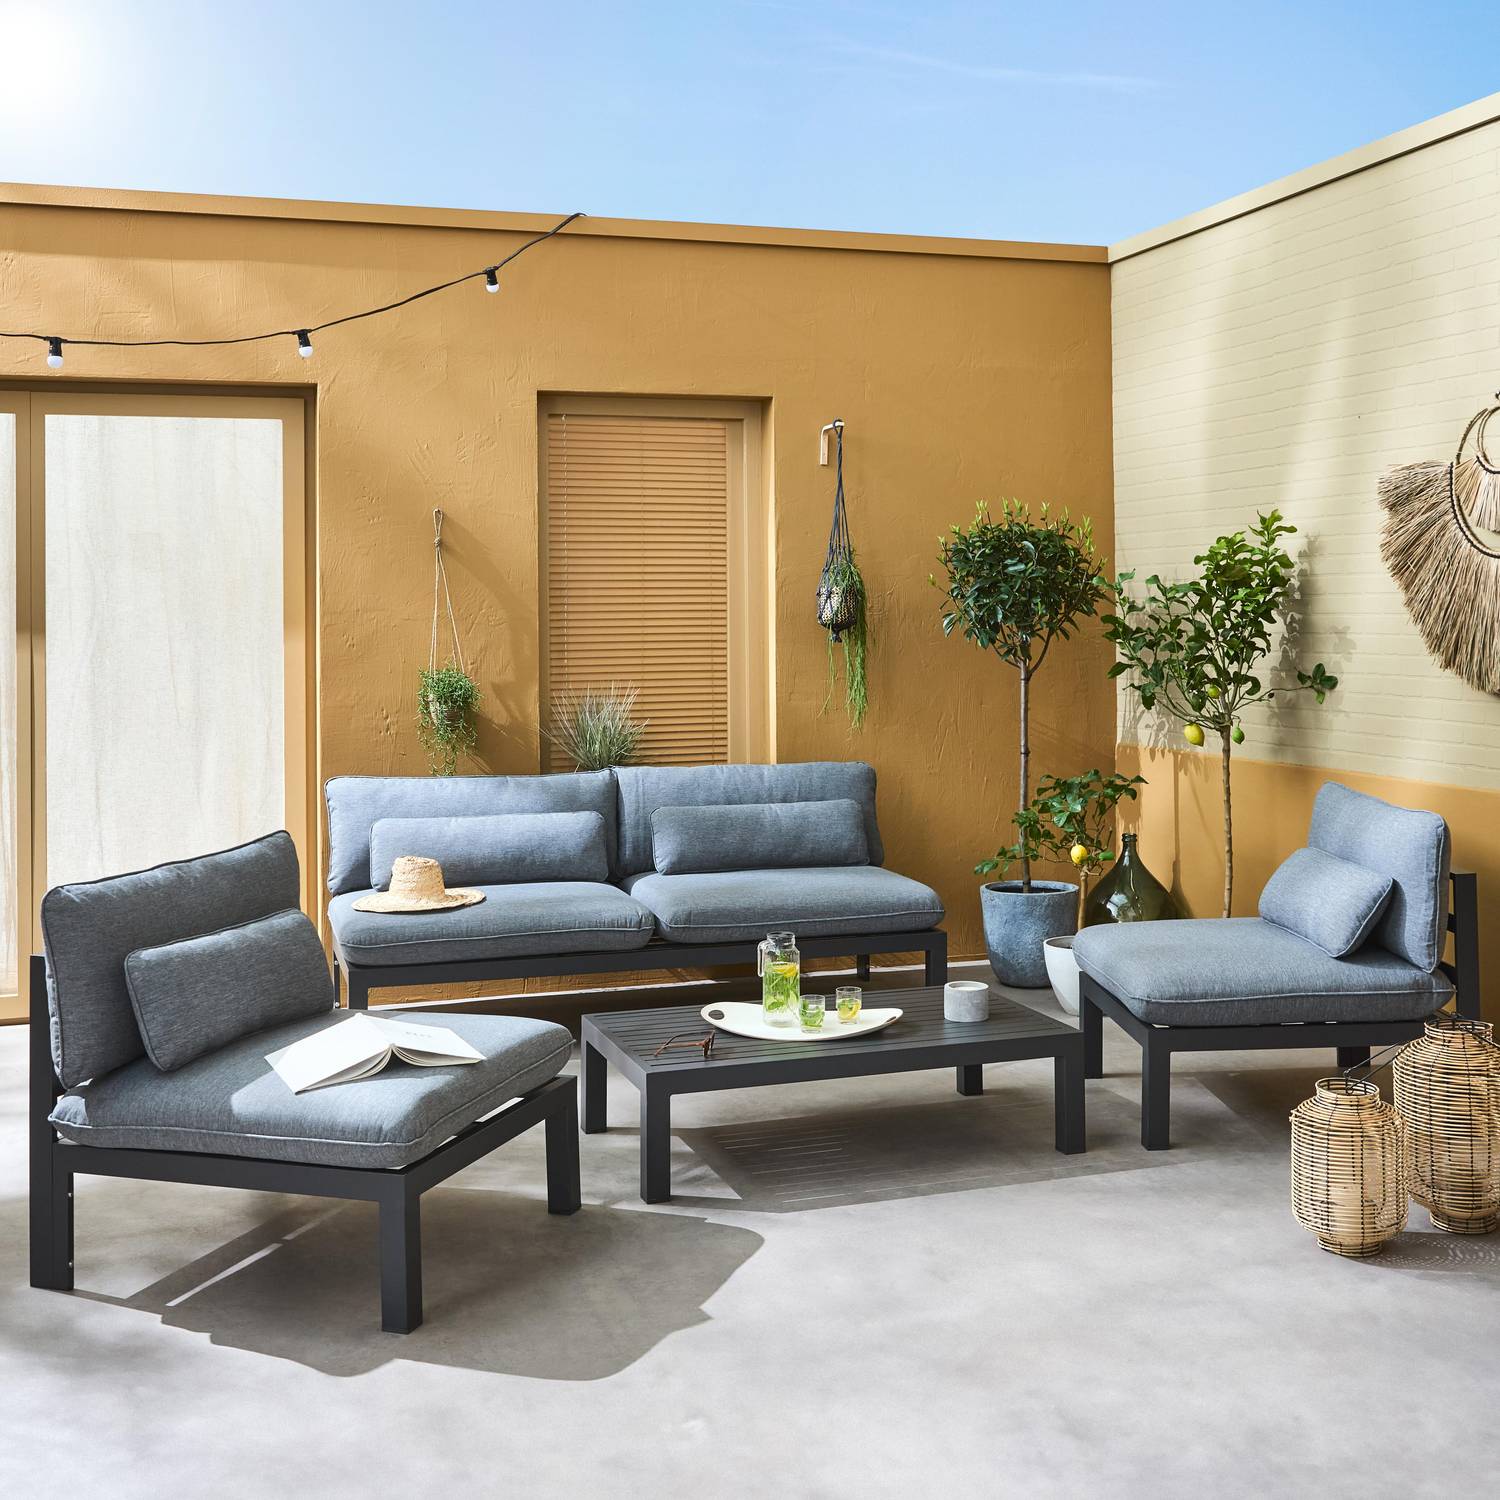 Salon de jardin 4 places en aluminium – assises profondes – Rieti – gris anthracite Photo1